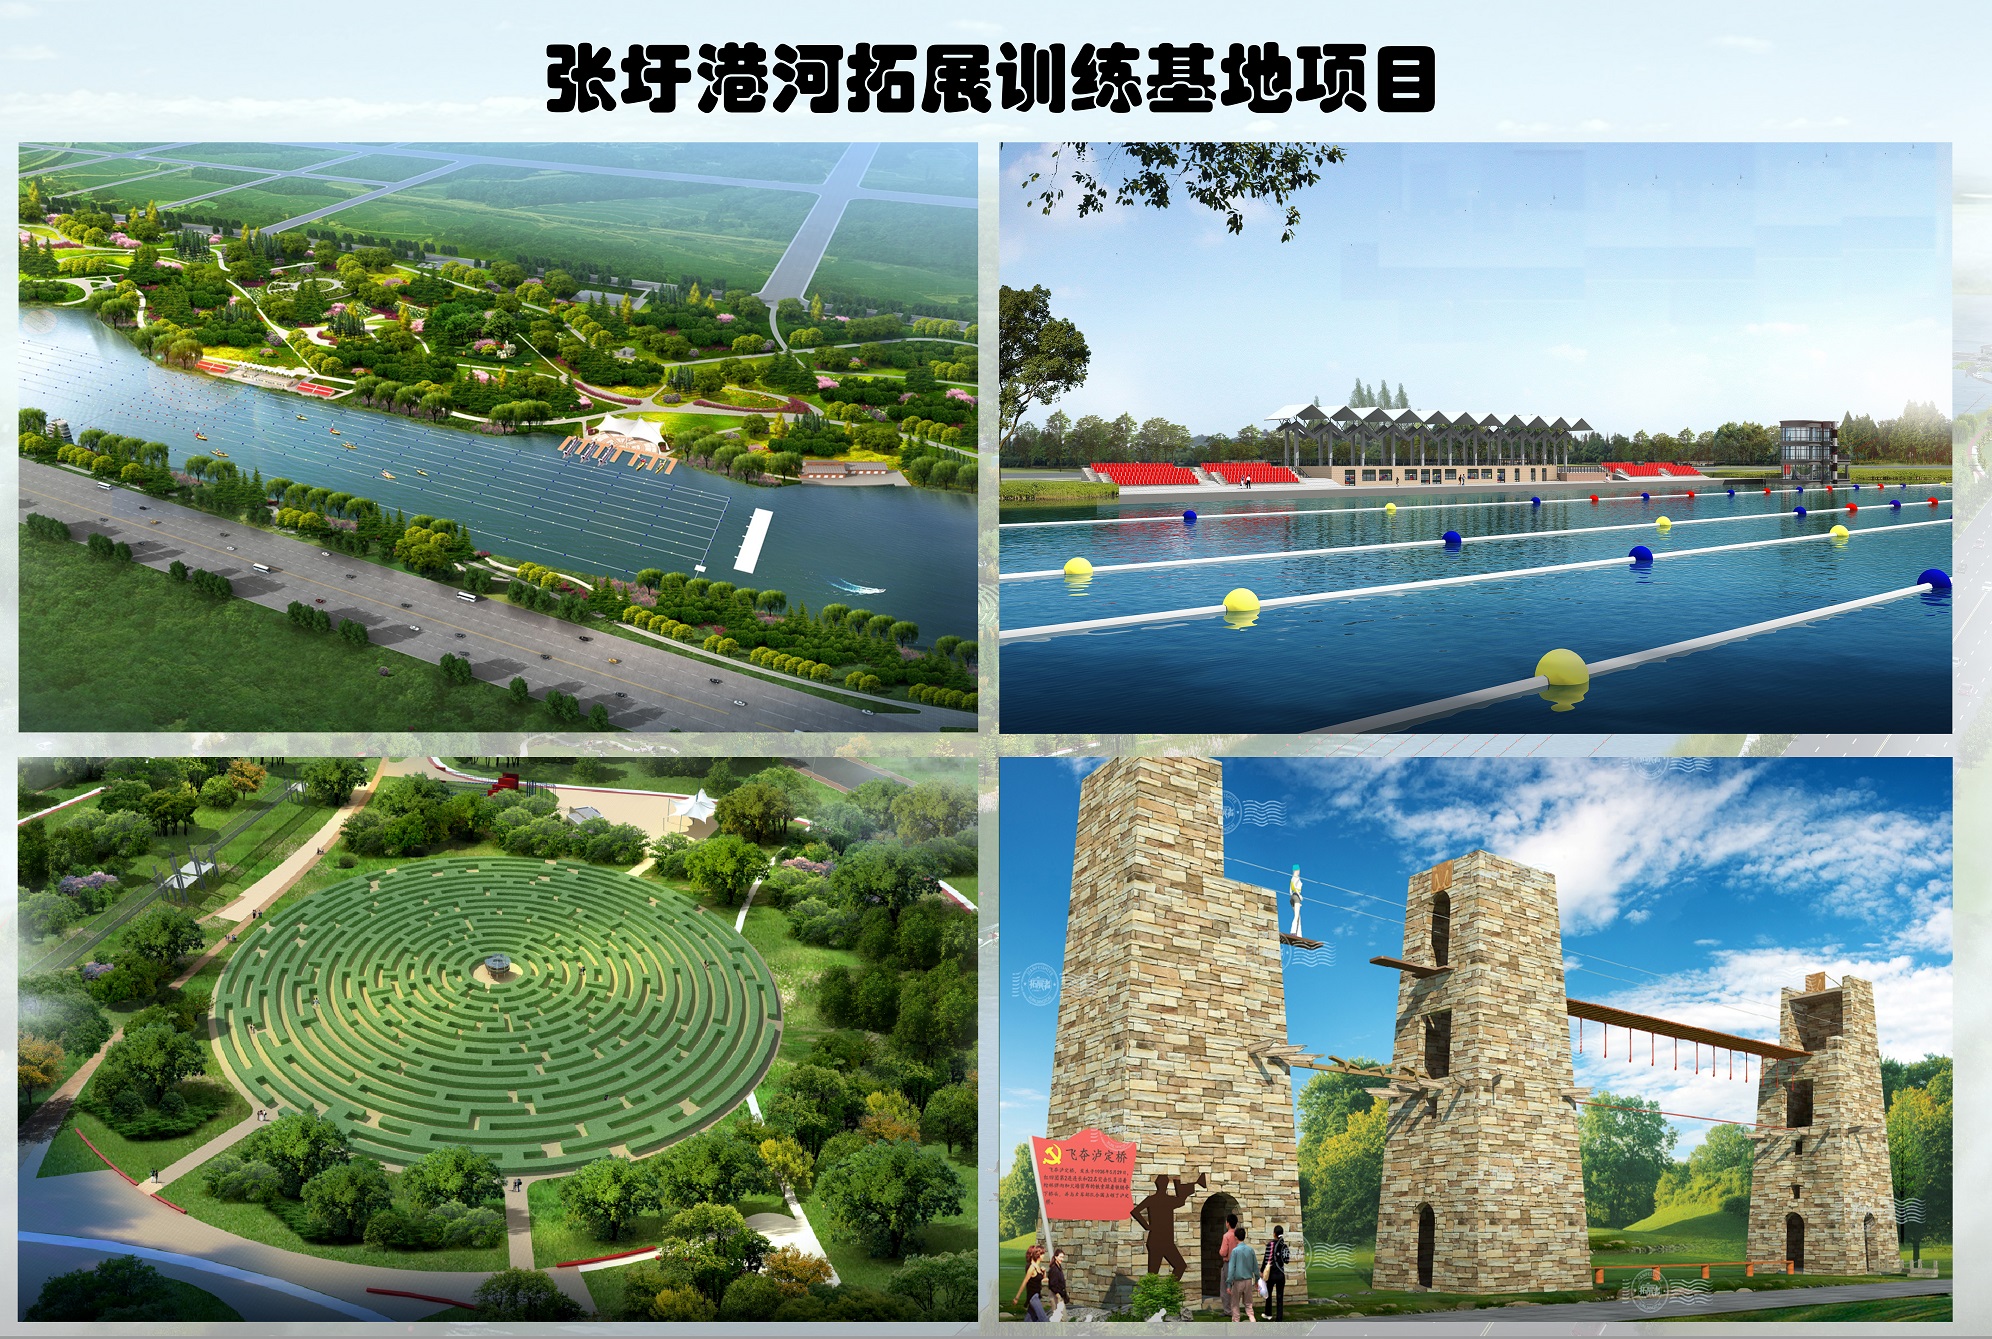 張圩港河北岸綜合綠地公園(圖3)